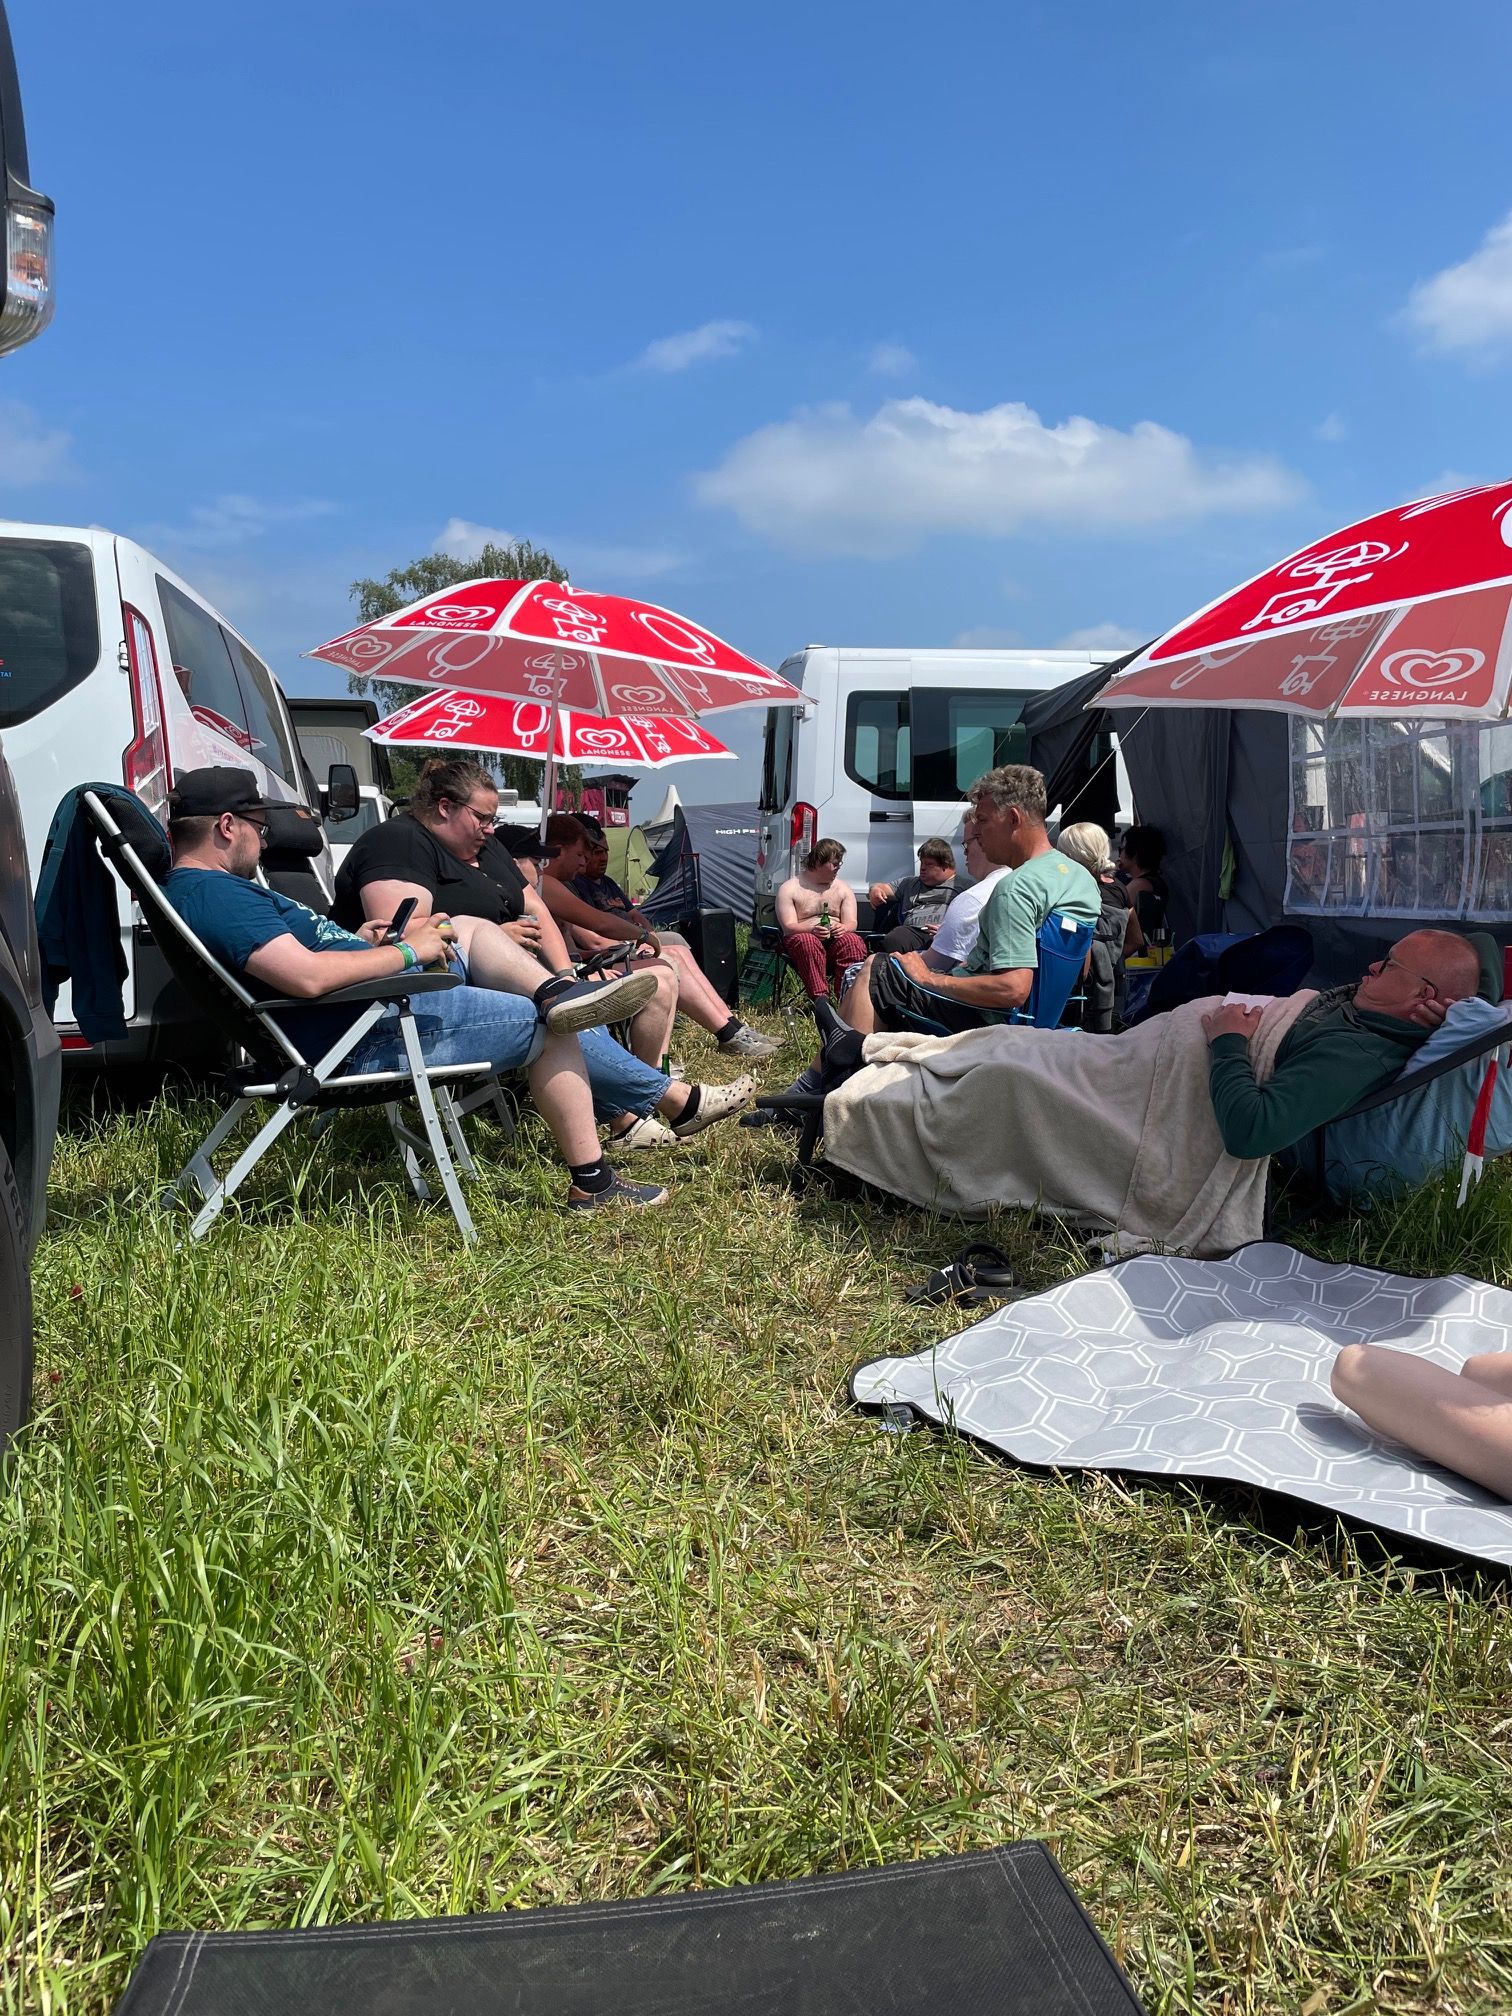 Eine Gruppe Menschen sitzen auf Stühlen und Liegen. Man sieht auch Autos und Sonnenschirme.